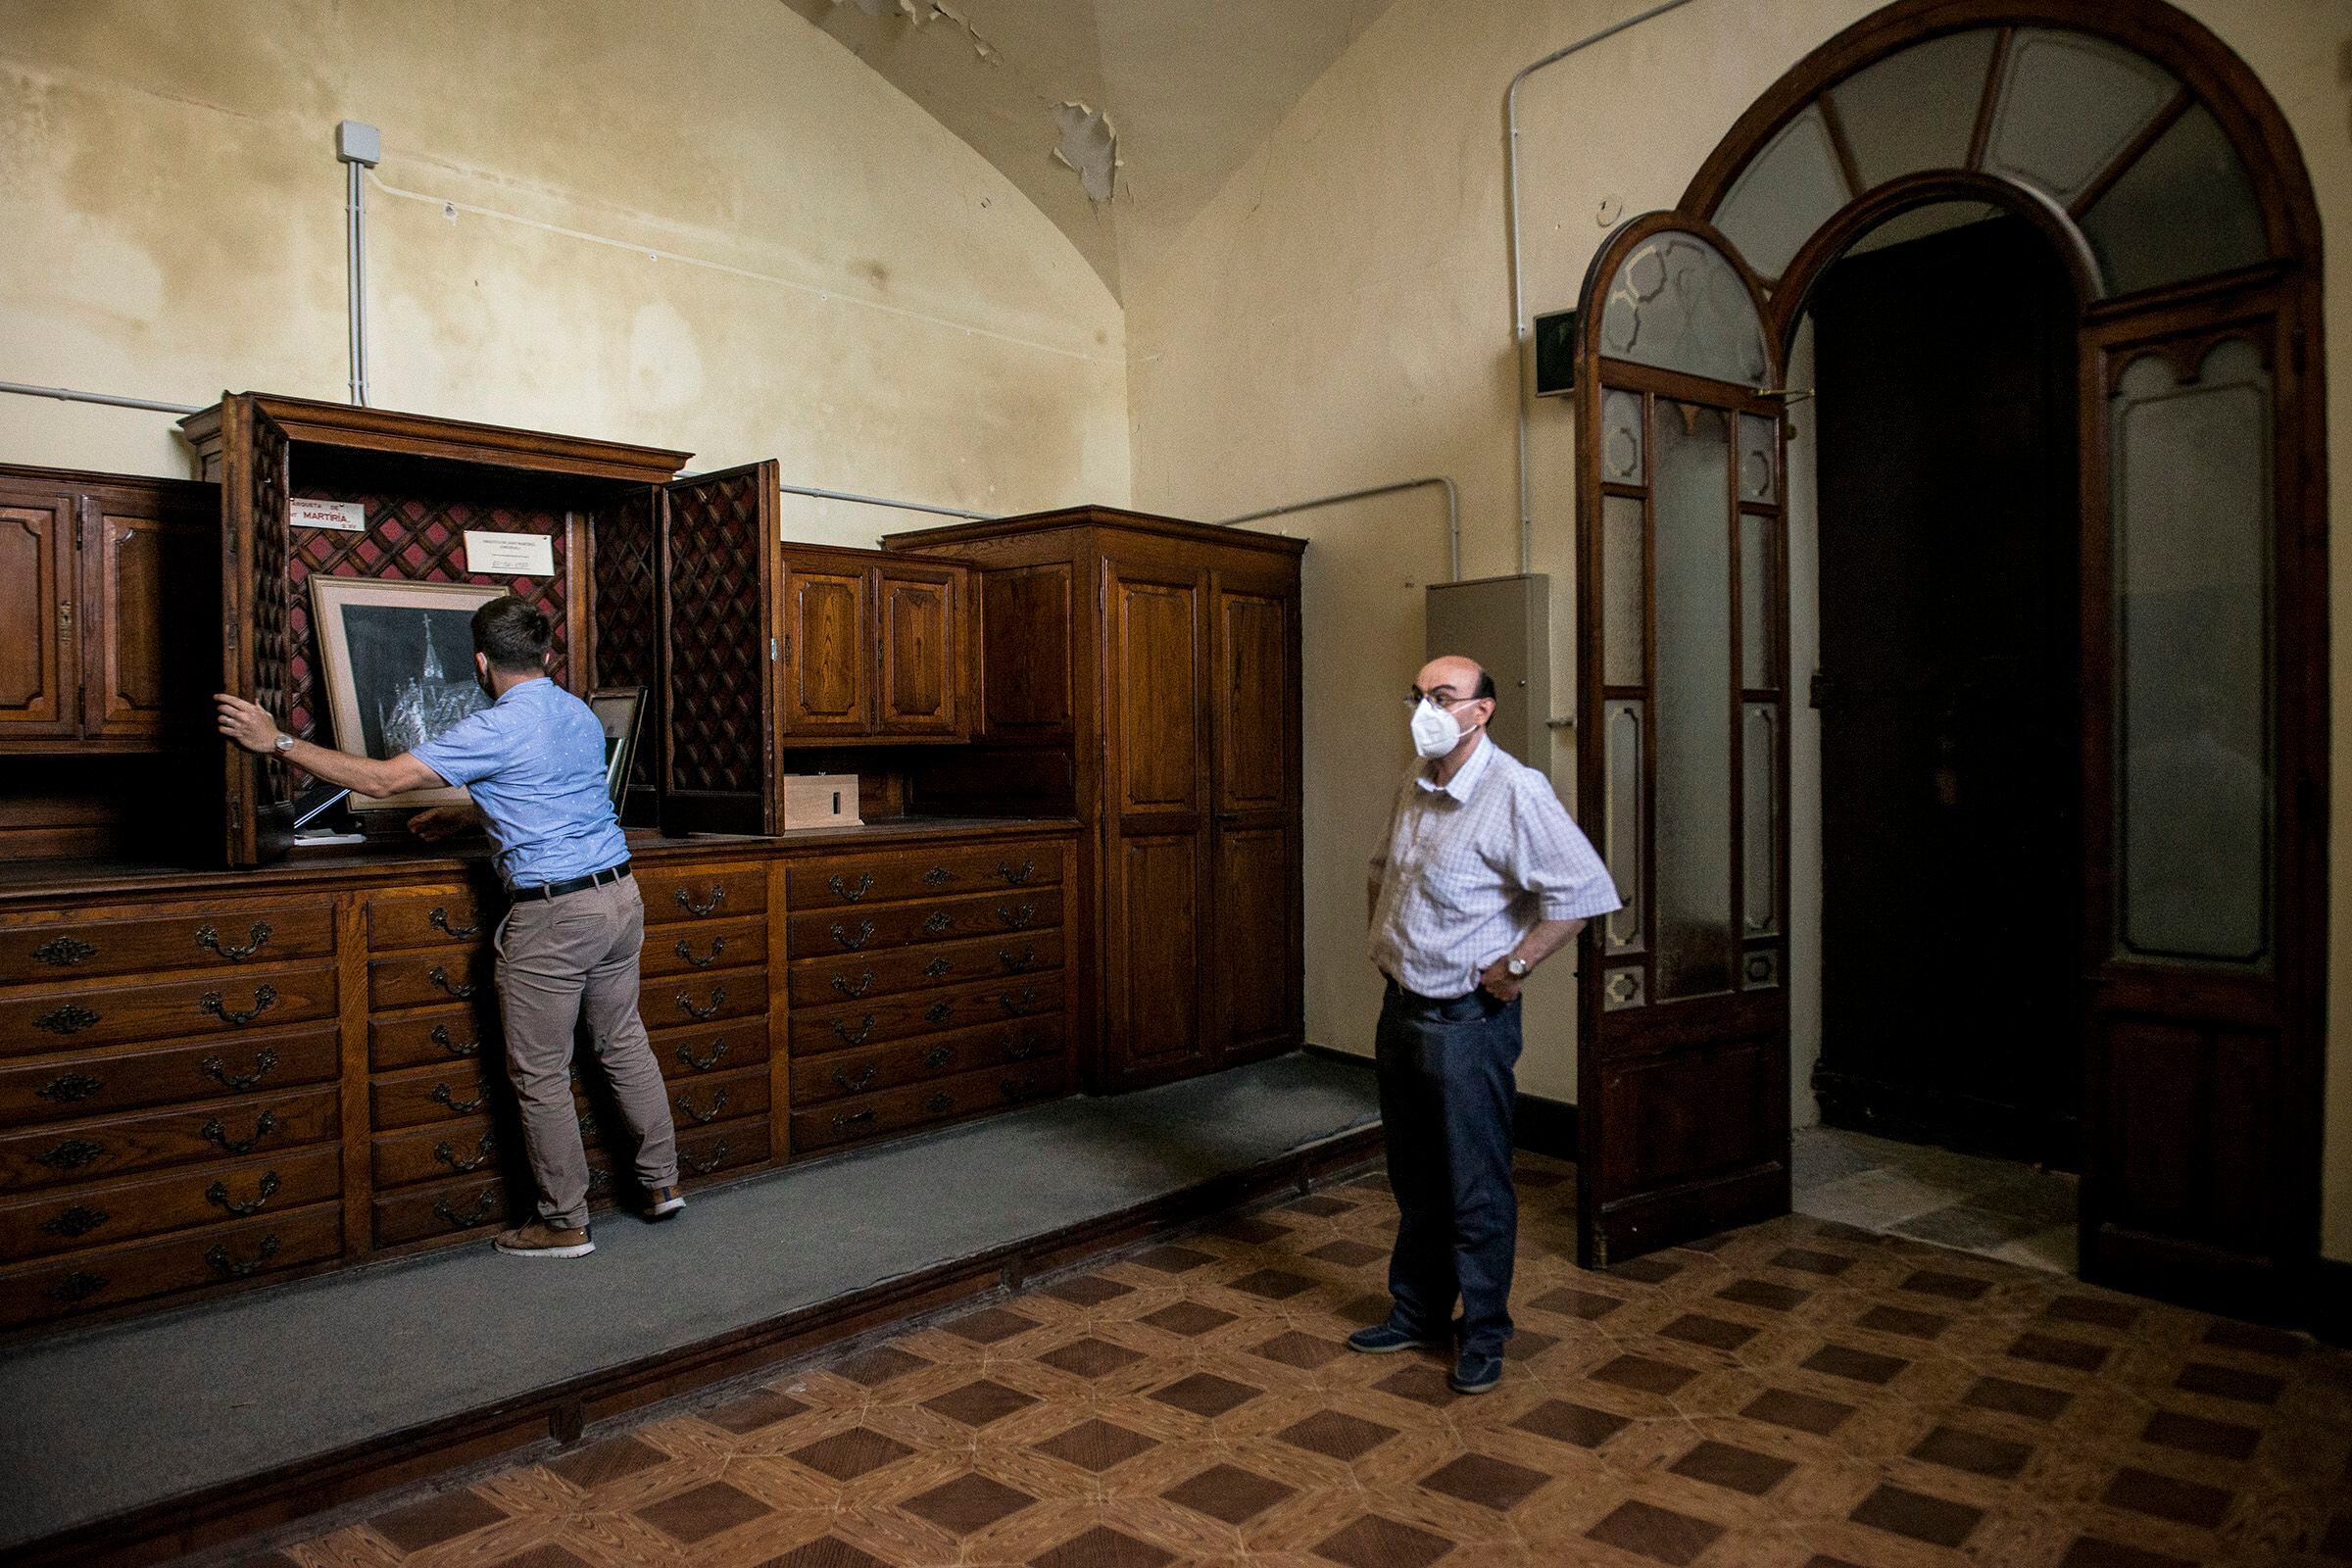 El concejal de Cultura de Banyoles, Miquel Cuenca, abre el mueble que conservaba la arqueta cuando fue robada.